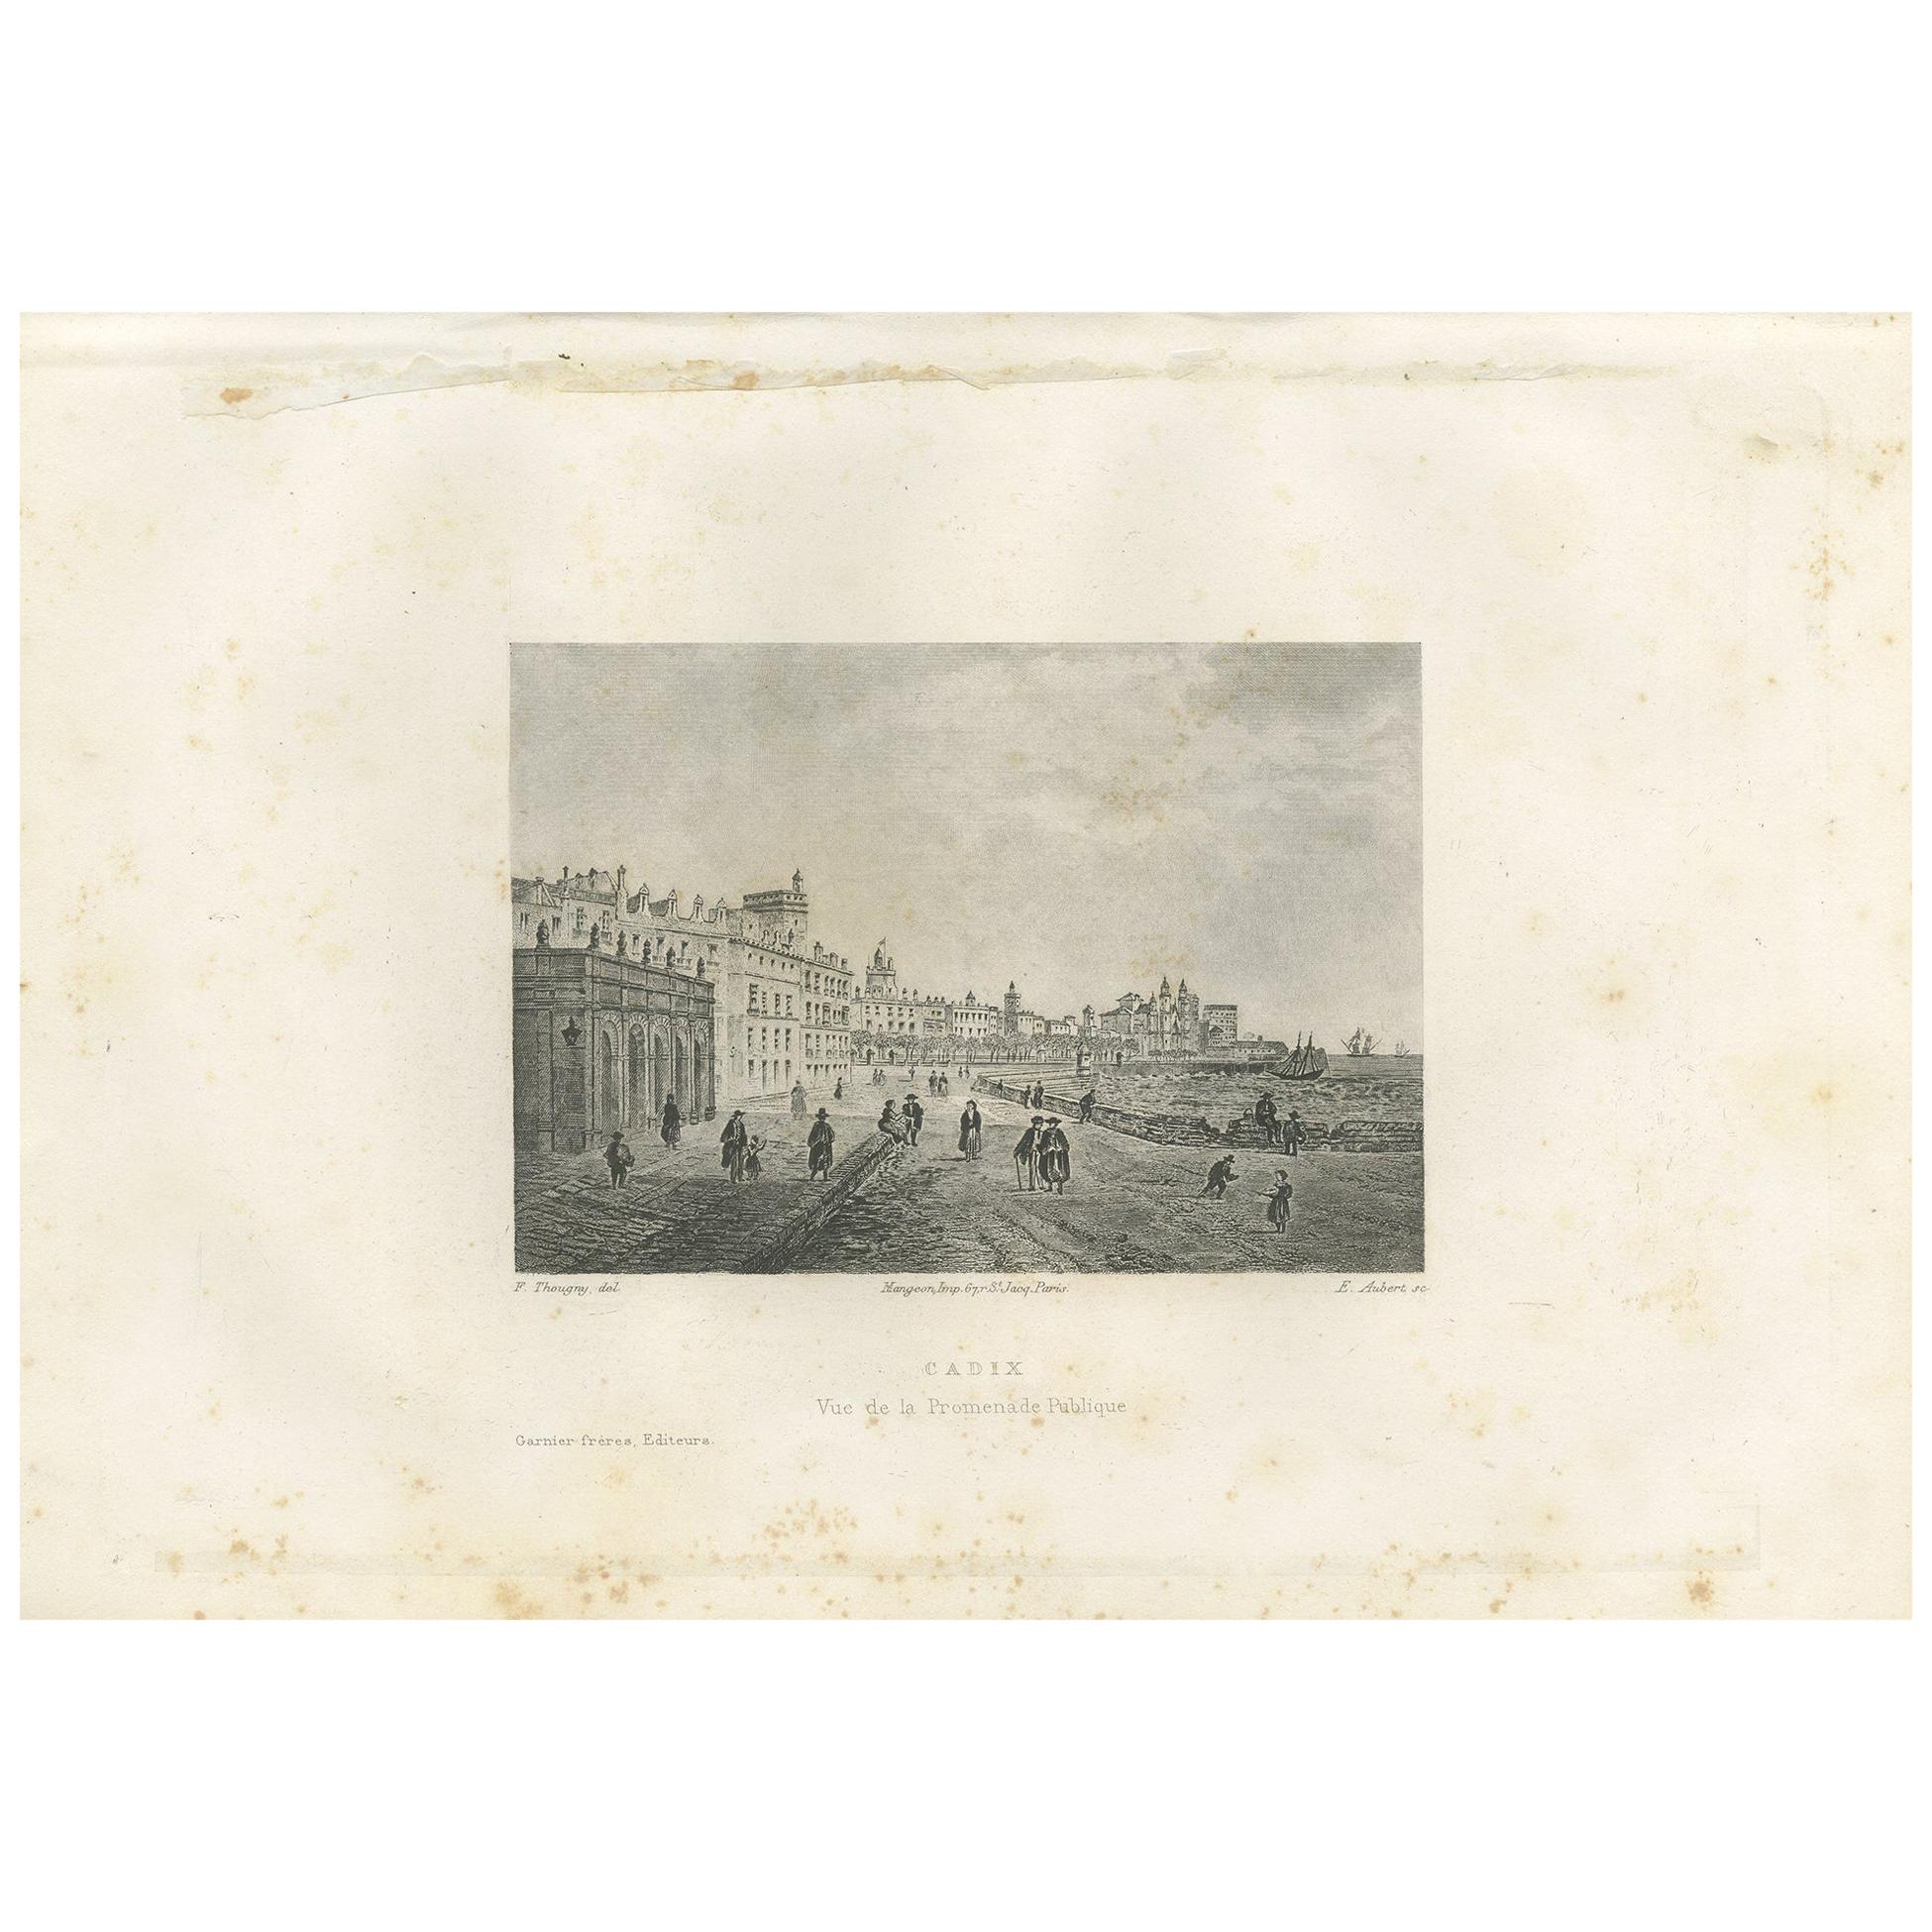 Antique Print of the City of Cádiz by Grégoire '1883' For Sale